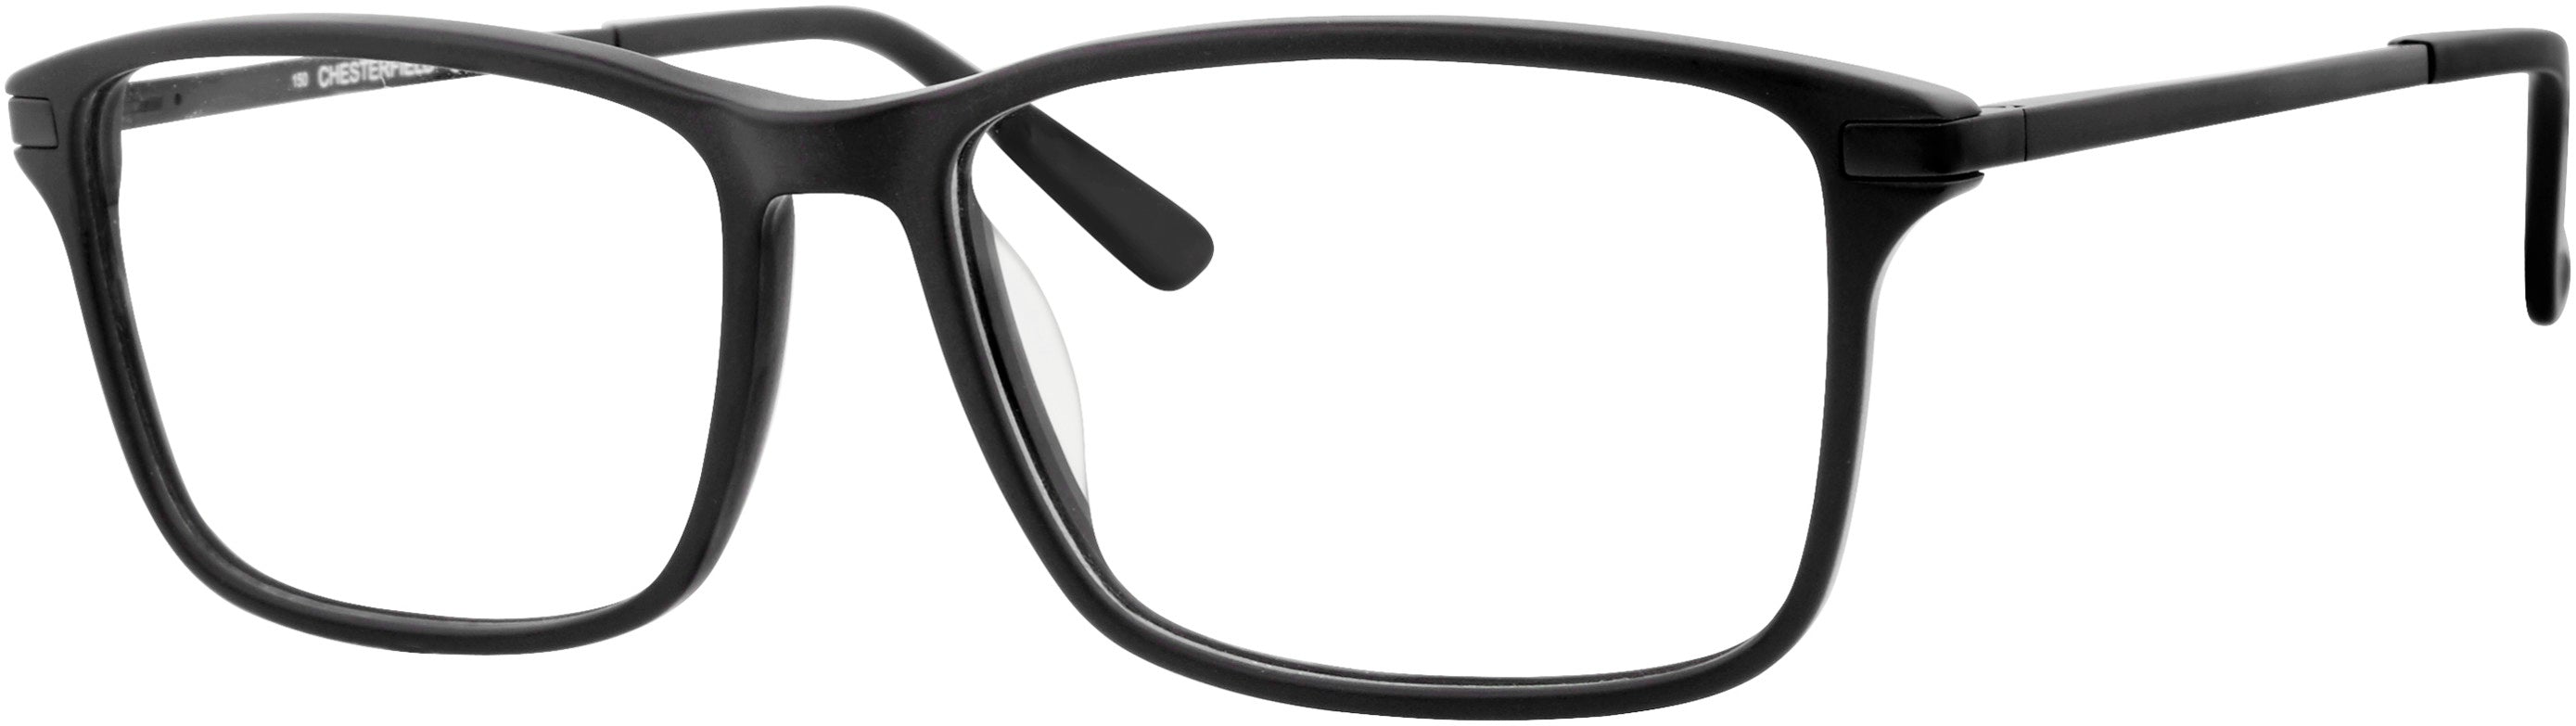  Chesterfield 64XL Rectangular Eyeglasses 0807-0807  Black (00 Demo Lens)